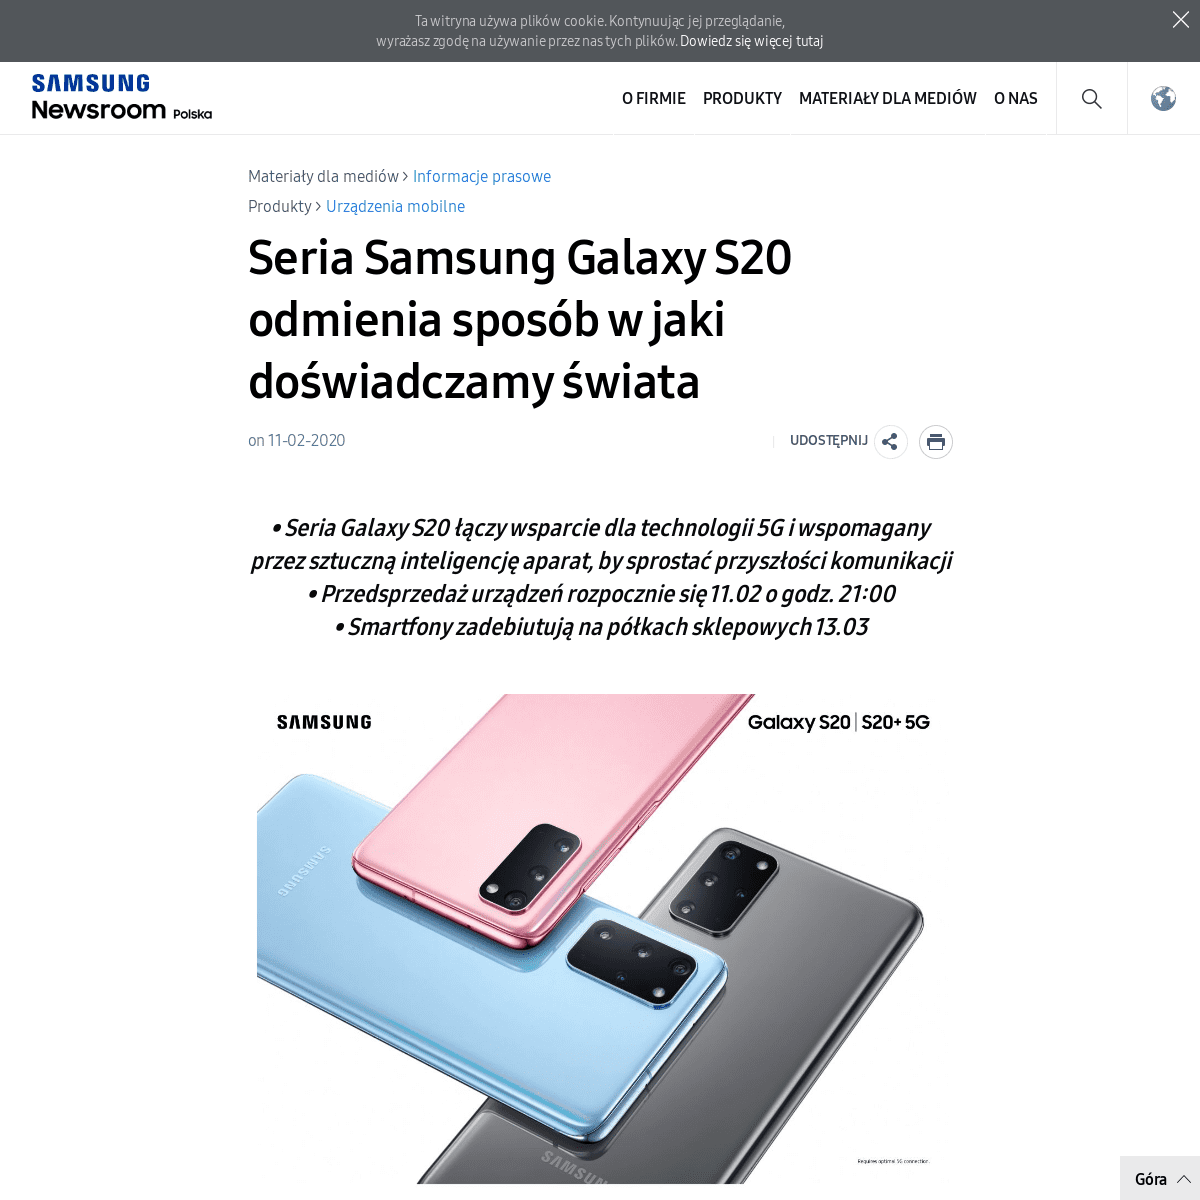 A complete backup of news.samsung.com/pl/seria_samsung_galaxy_s20